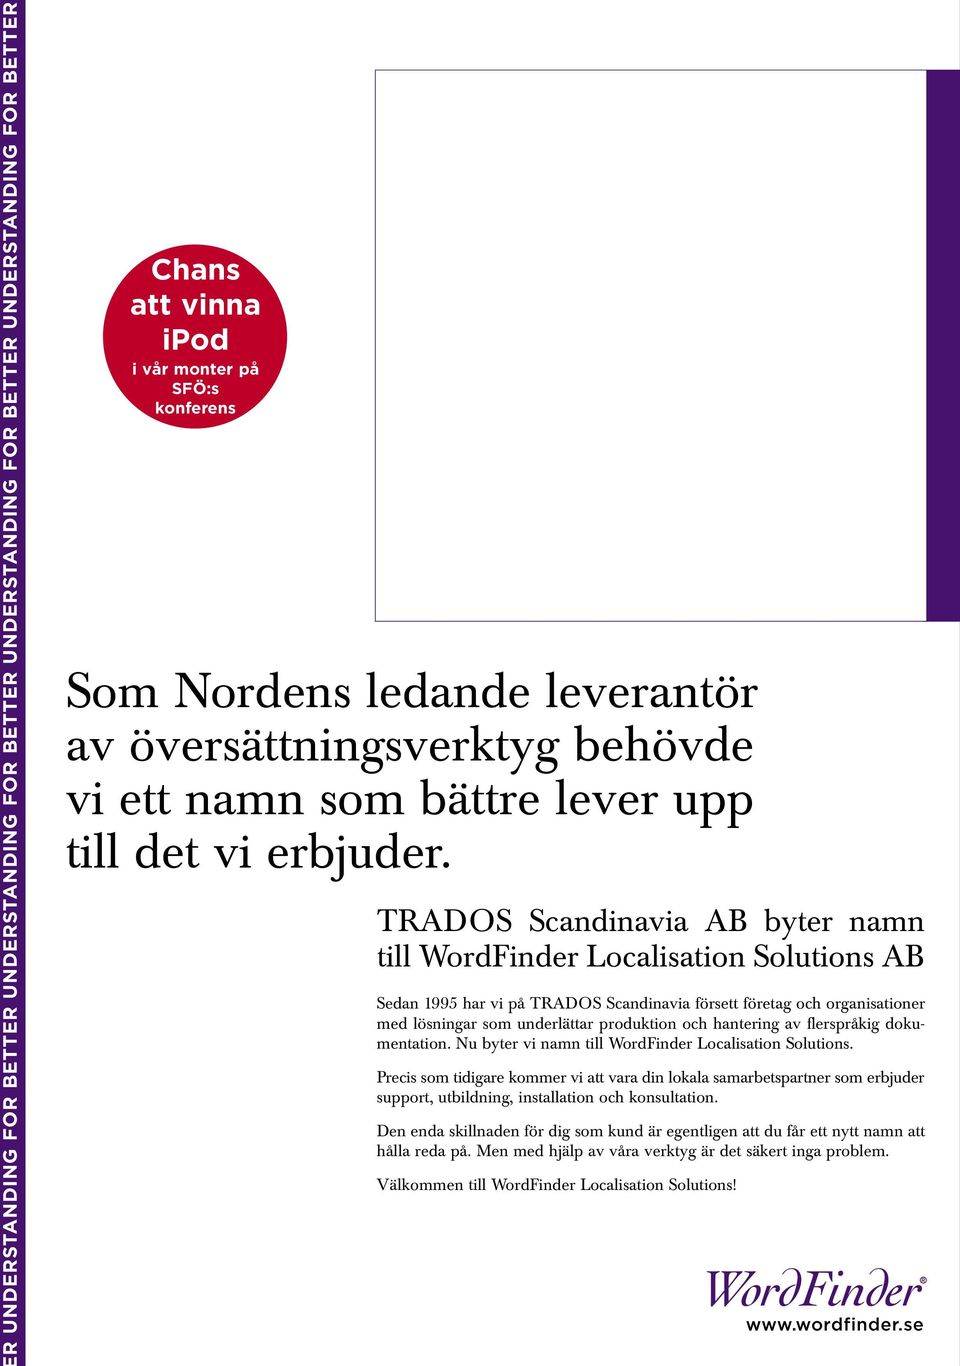 TRADOS Scandinavia AB byter namn till WordFinder Localisation Solutions AB Sedan 1995 har vi på TRADOS Scandinavia försett företag och organisationer med lösningar som underlättar produktion och